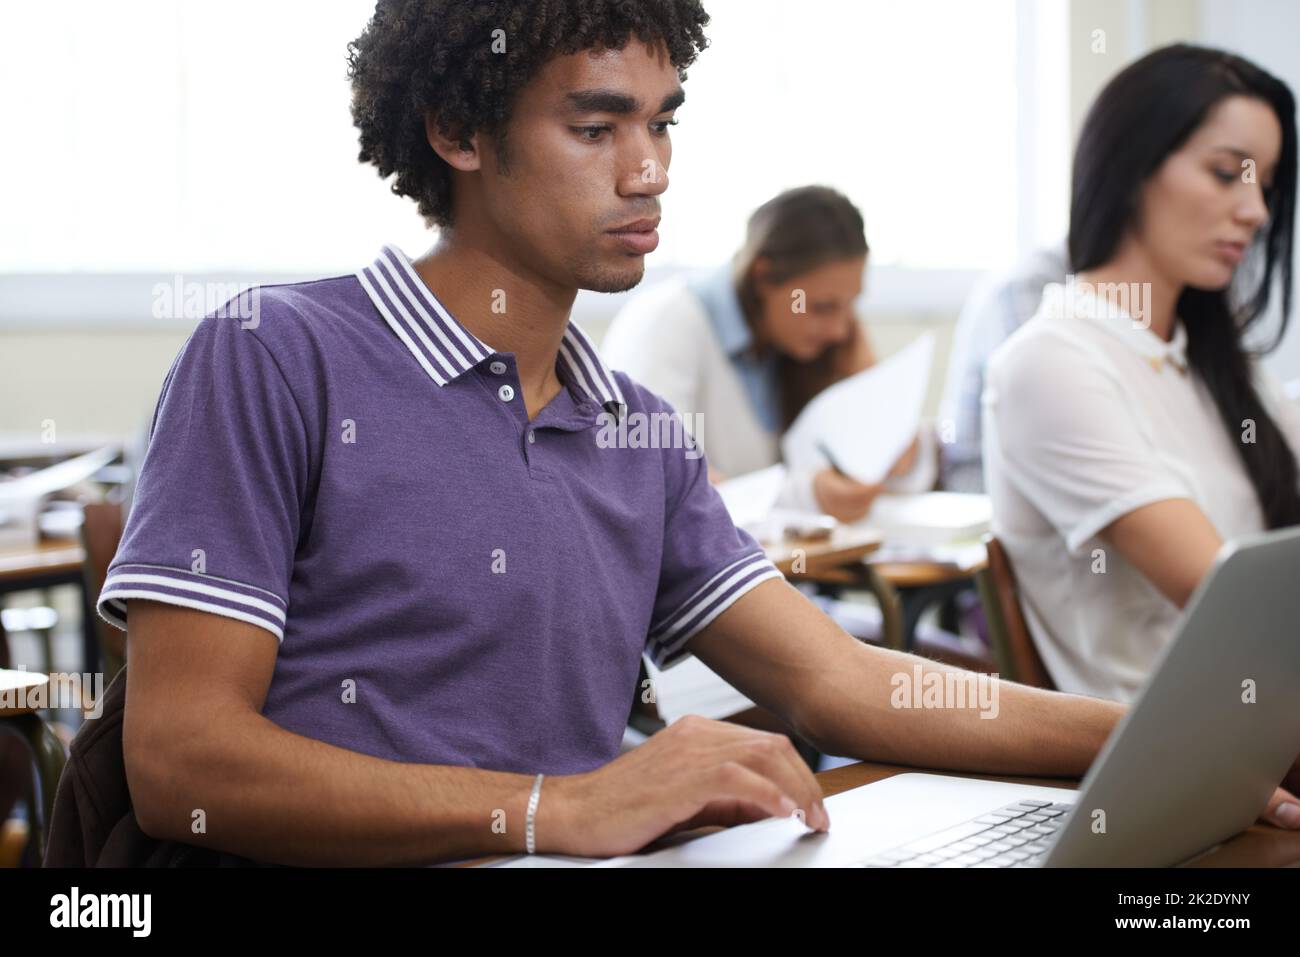 Eingetaucht in sein Projekt. Aufnahme einer Gruppe von Studenten, die im Unterricht an Laptops arbeiten. Stockfoto